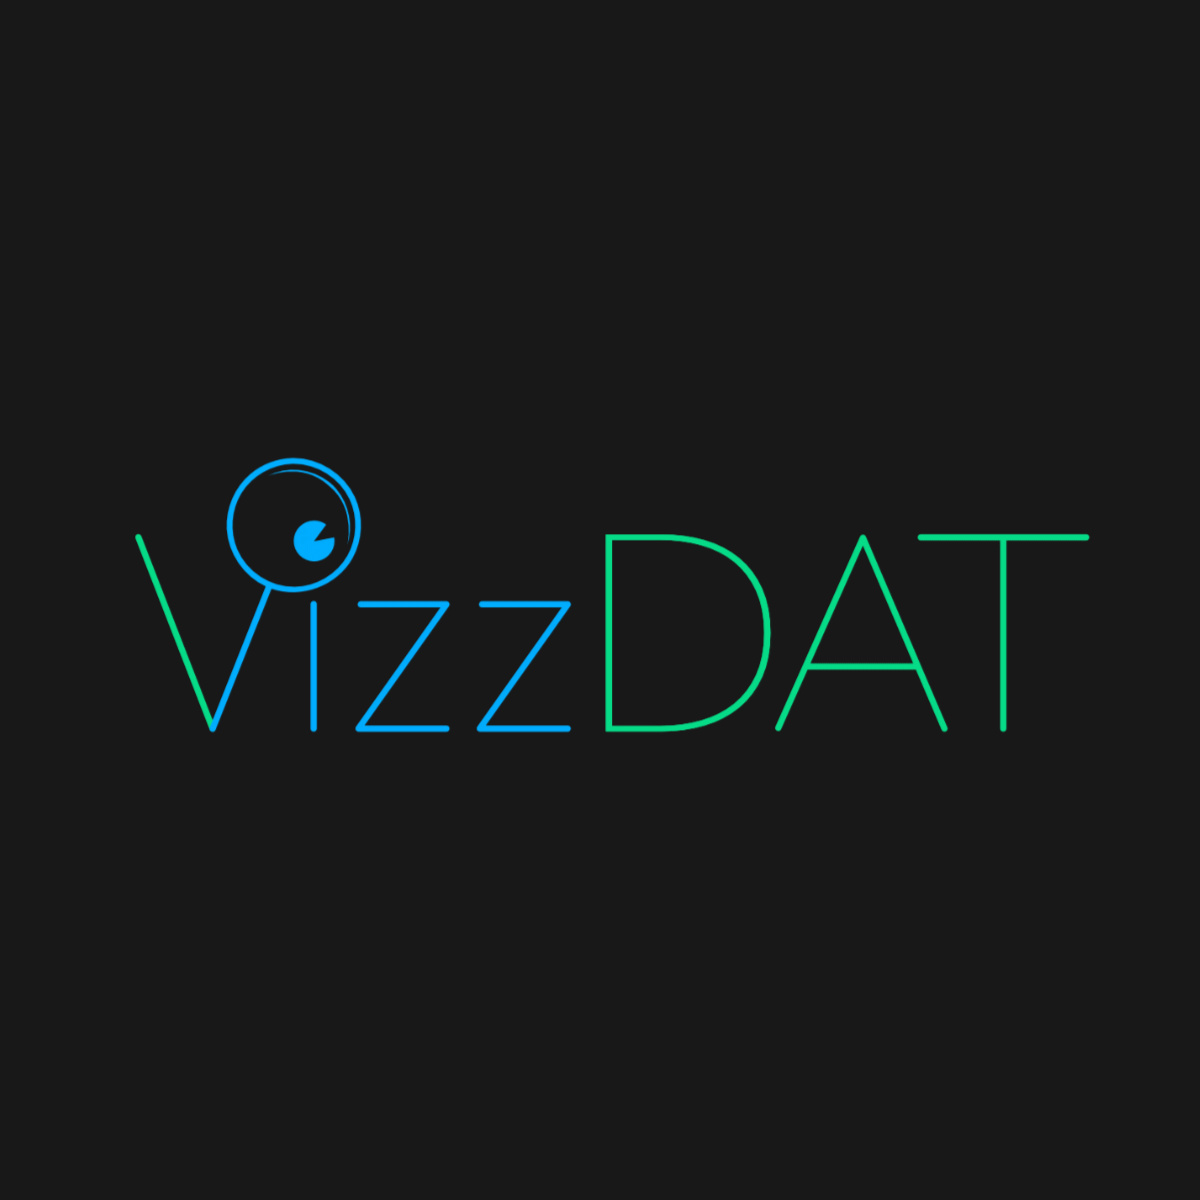 VizzDat Logotype